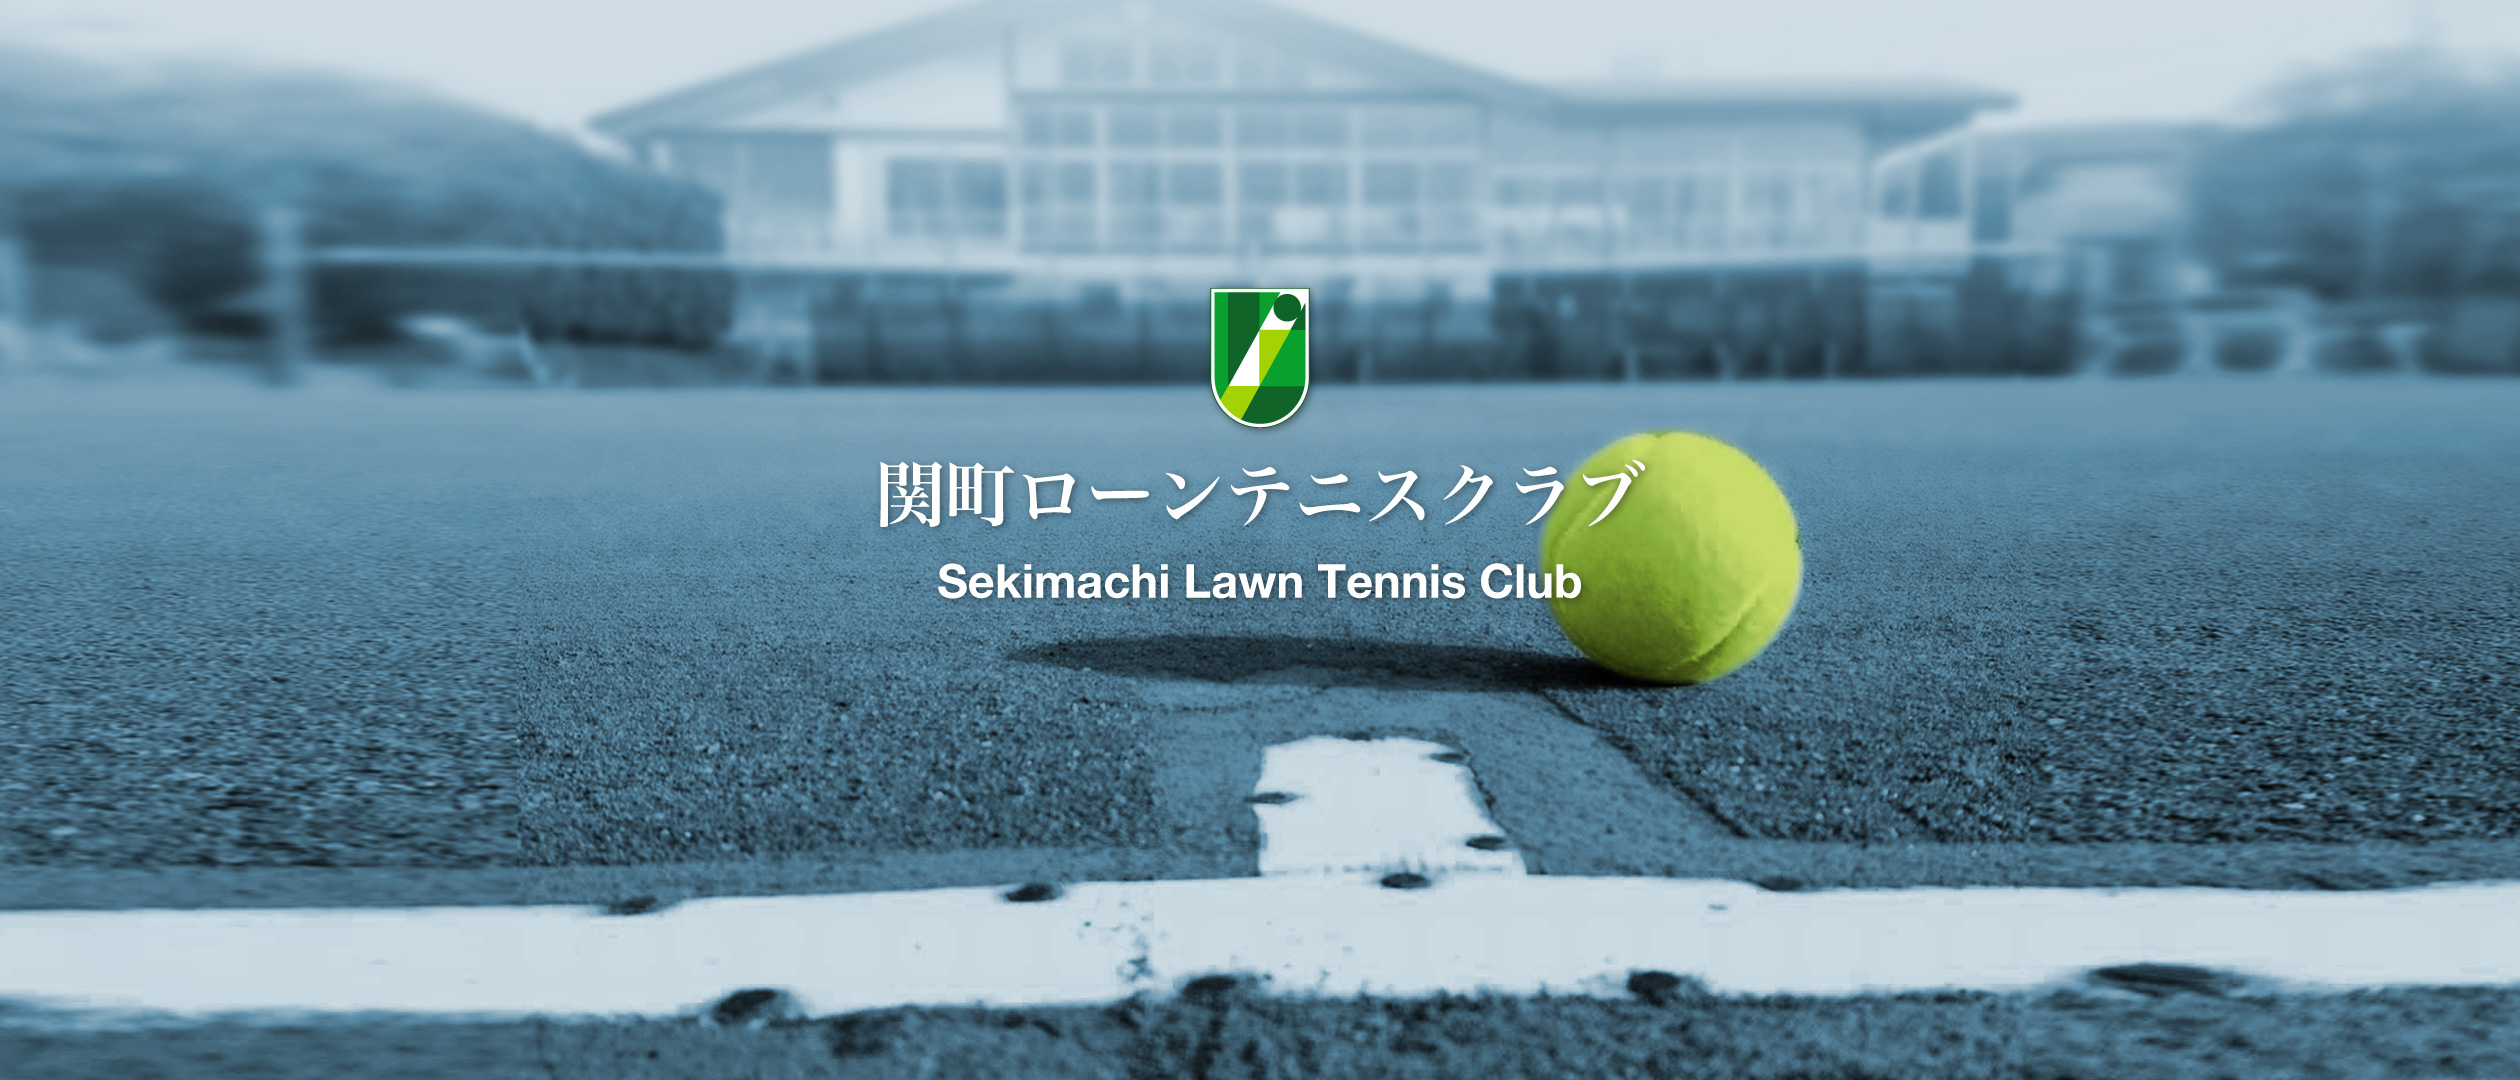 関町ローンテニスクラブ